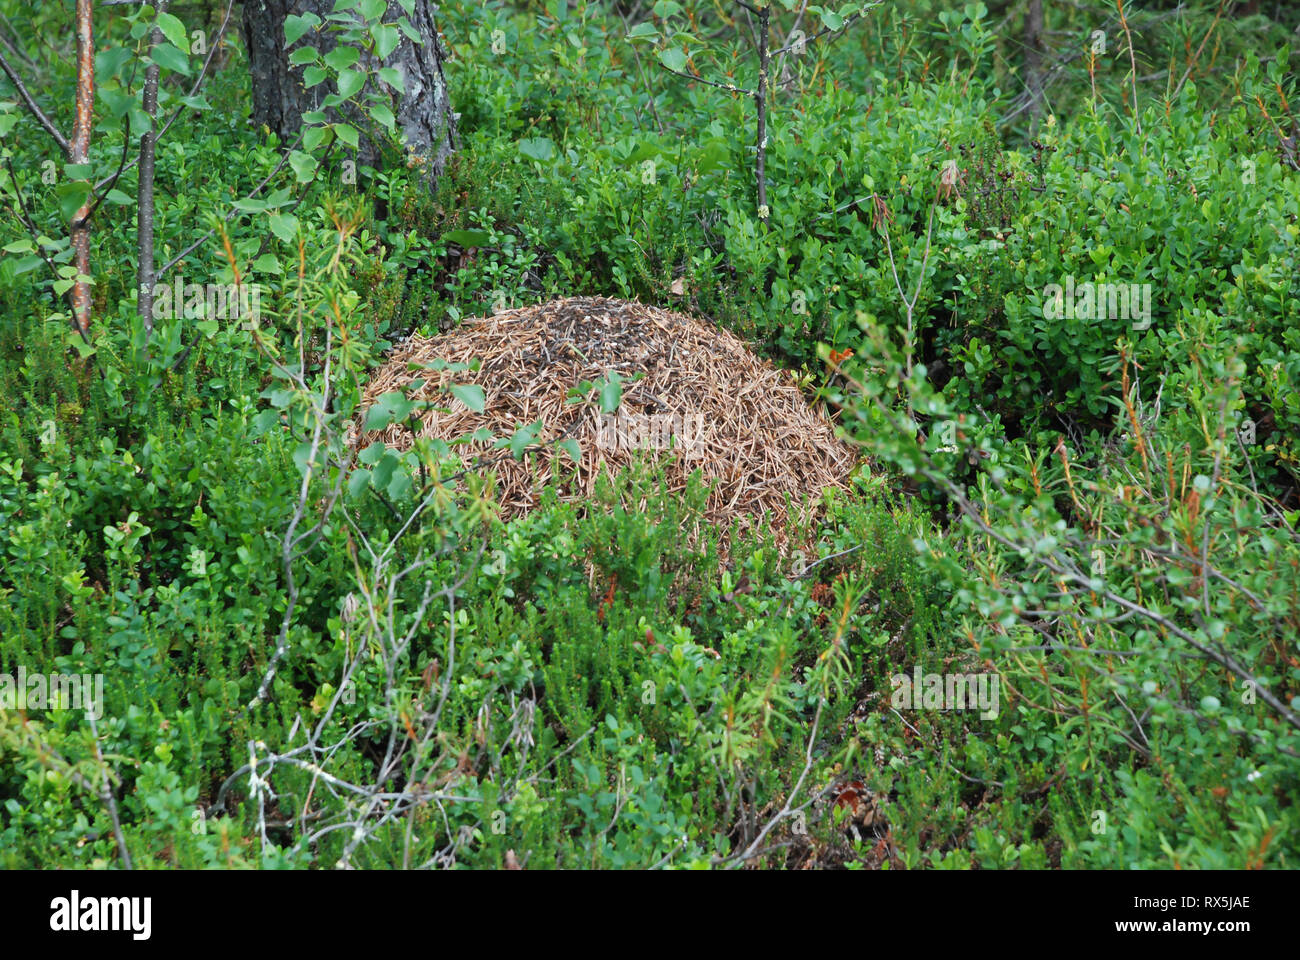 Legno grande ant nest nella Taiga Foresta (foresta boreale) biome, naturale paesaggio selvaggio nel nord est della Finlandia, Europa. Foto Stock